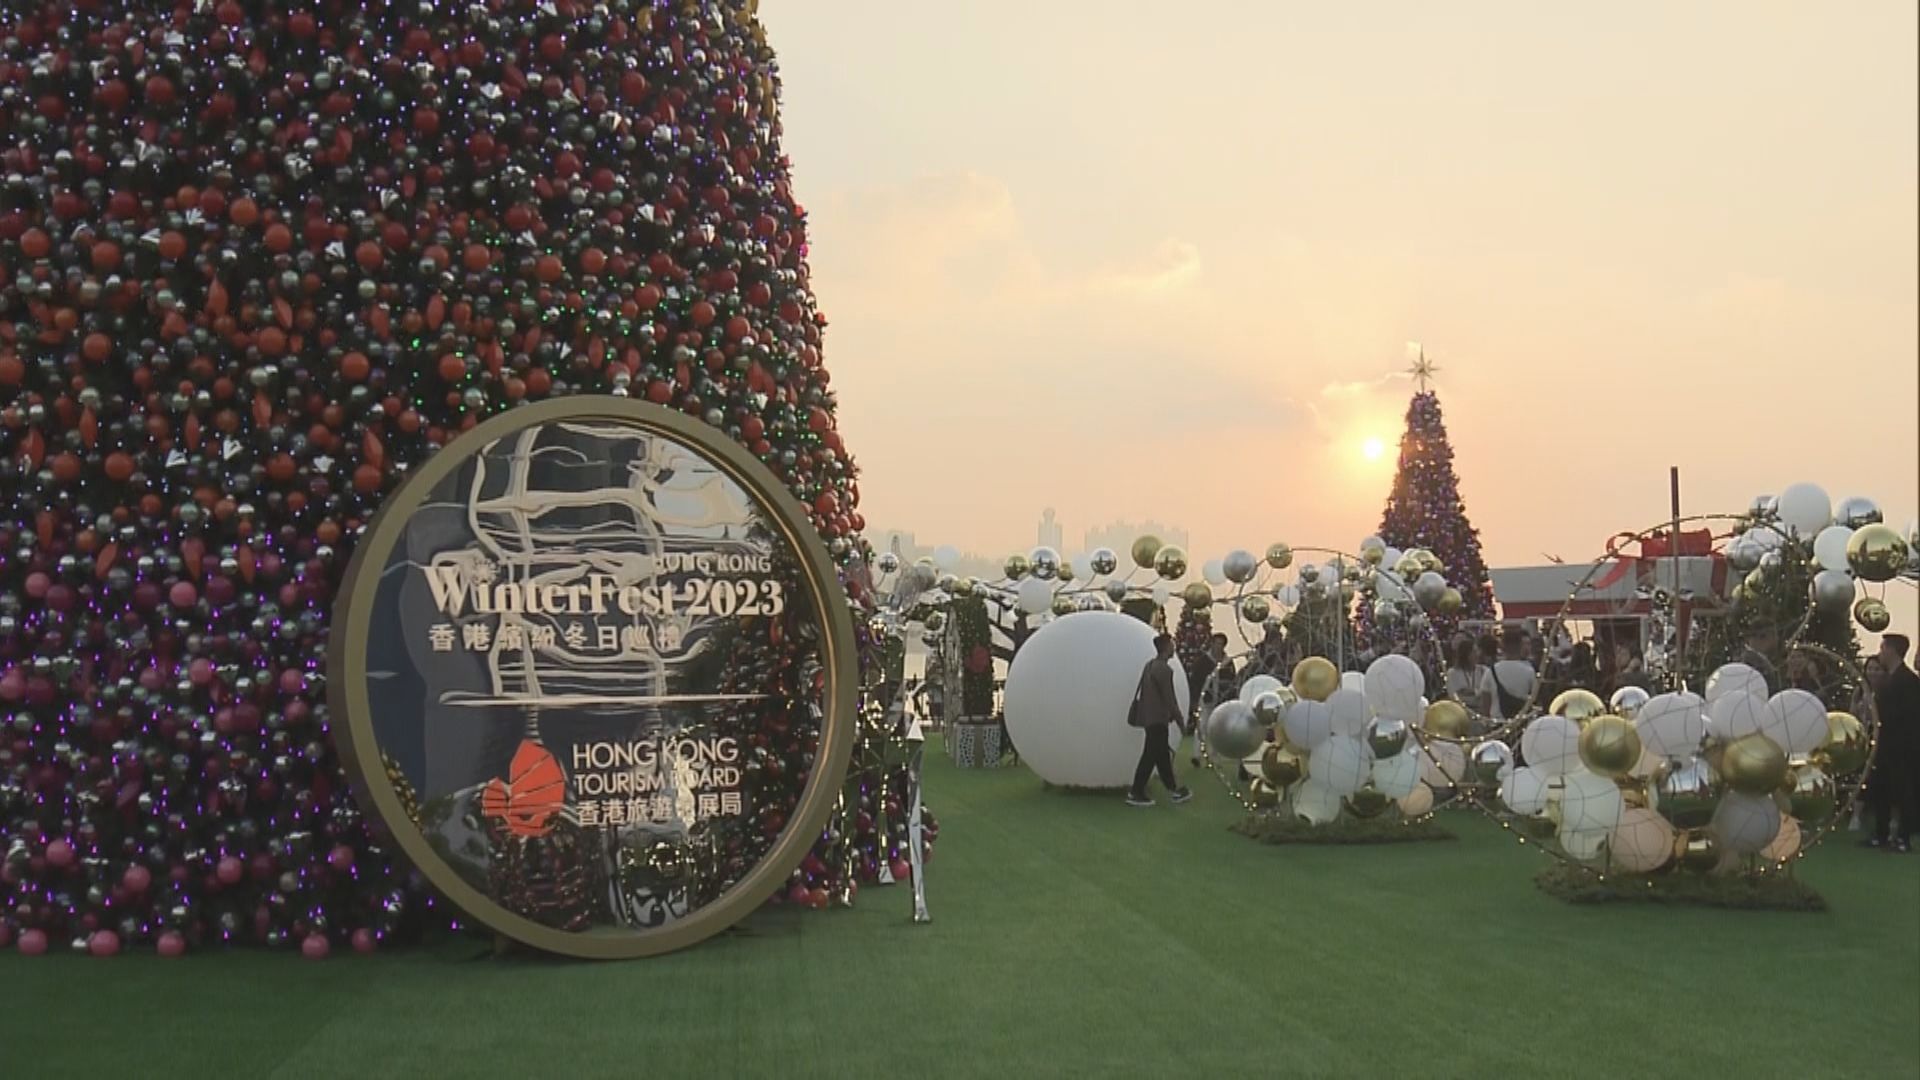 旅發局海濱聖誕小鎮揭幕 於西九設20米高聖誕樹